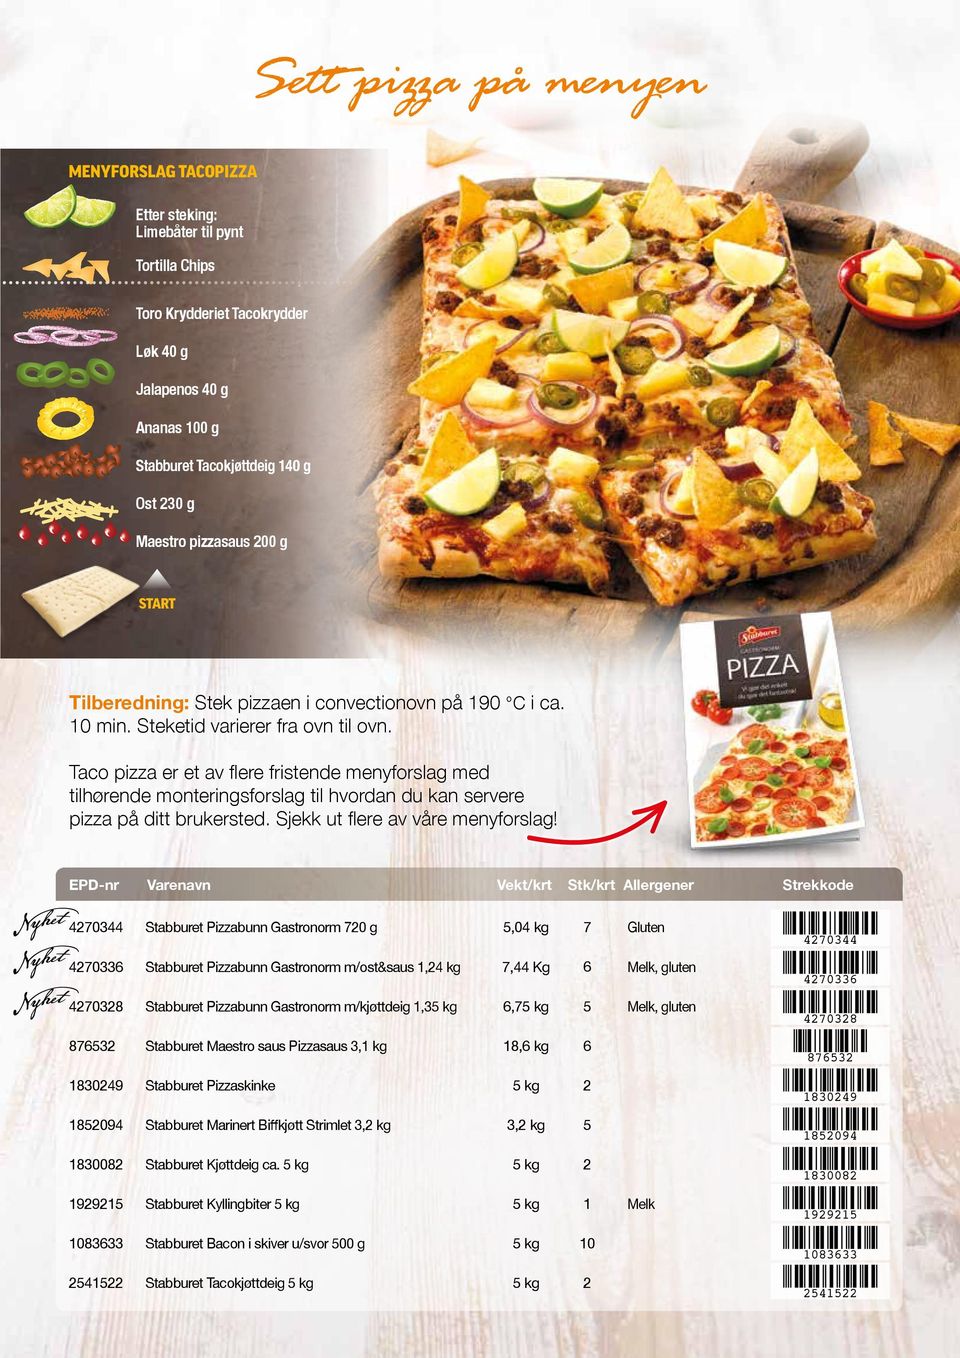 Taco pizza er et av flere fristende menyforslag med tilhørende monteringsforslag til hvordan du kan servere pizza på ditt brukersted. Sjekk ut flere av våre menyforslag!